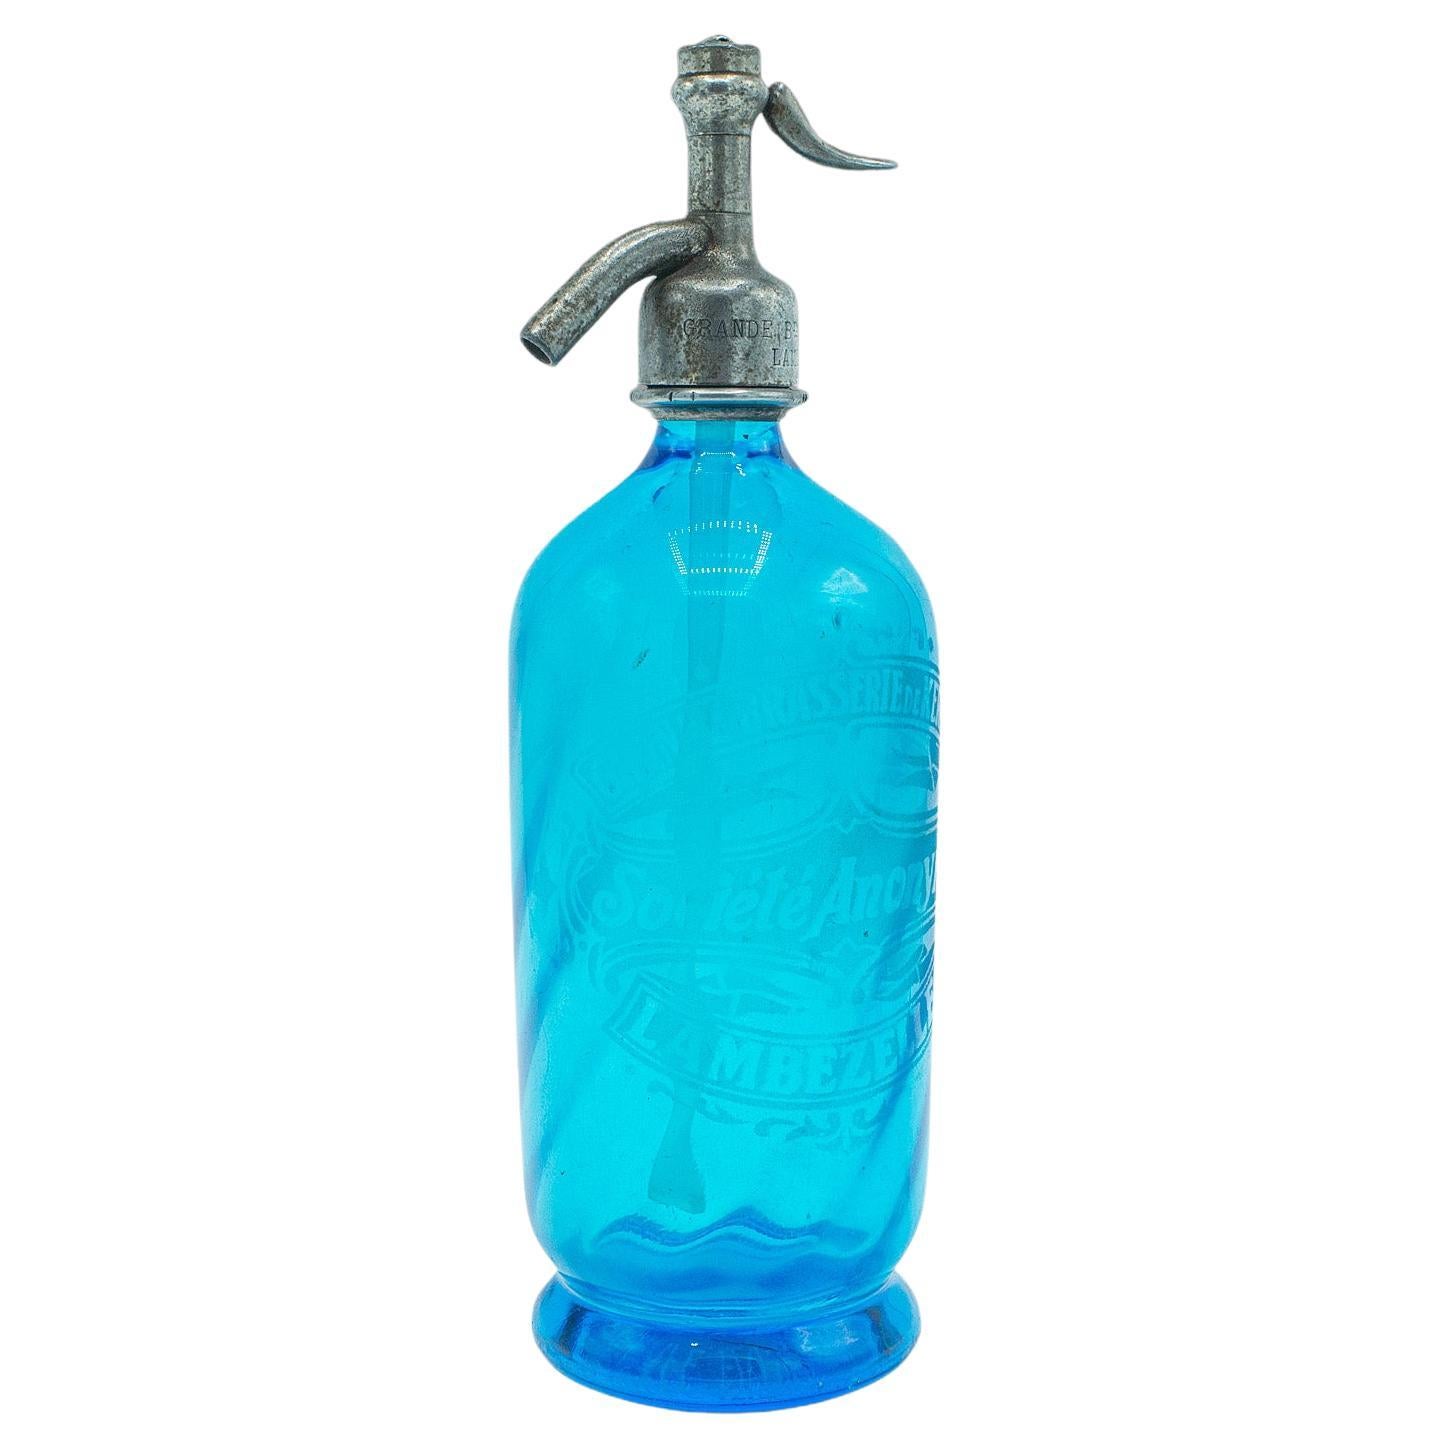 Blauer Soda-Siphon, Französisch, Dekoratives Glas, Bistro-Seltzer-Flasche, 1932